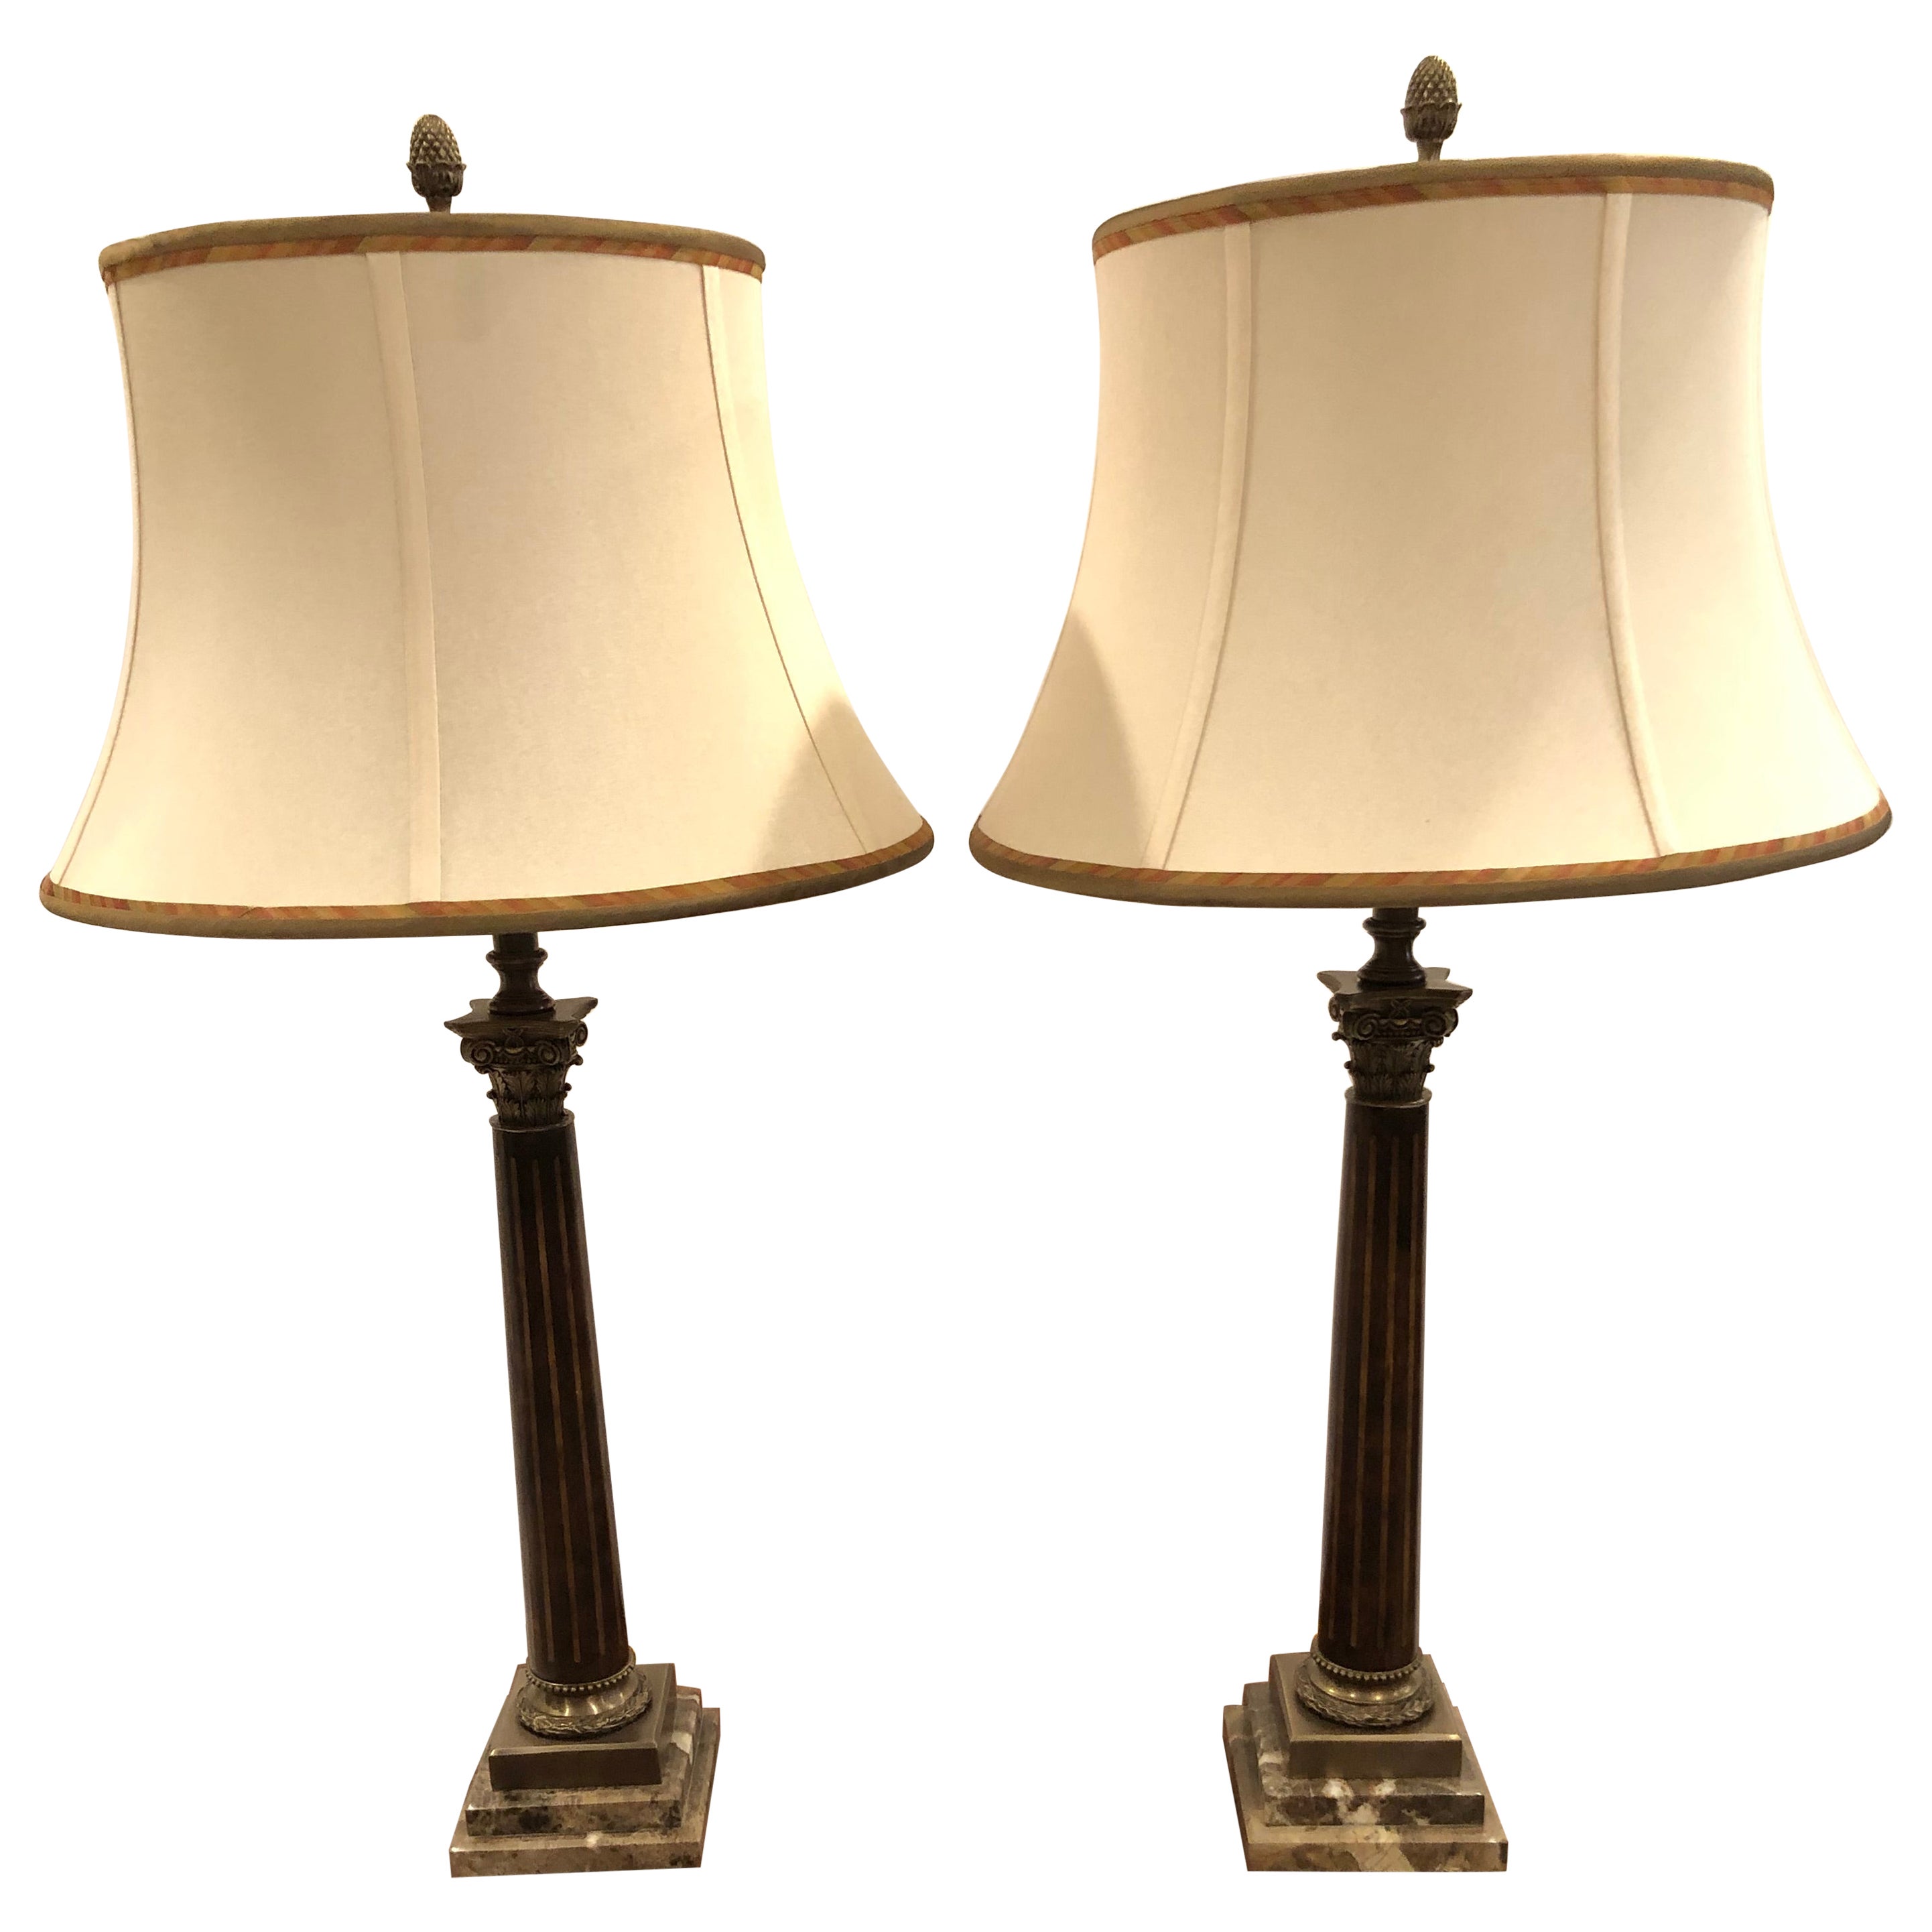 Belle paire de lampes de table à colonne incrustées de bois de ronce de Theodore Alexander